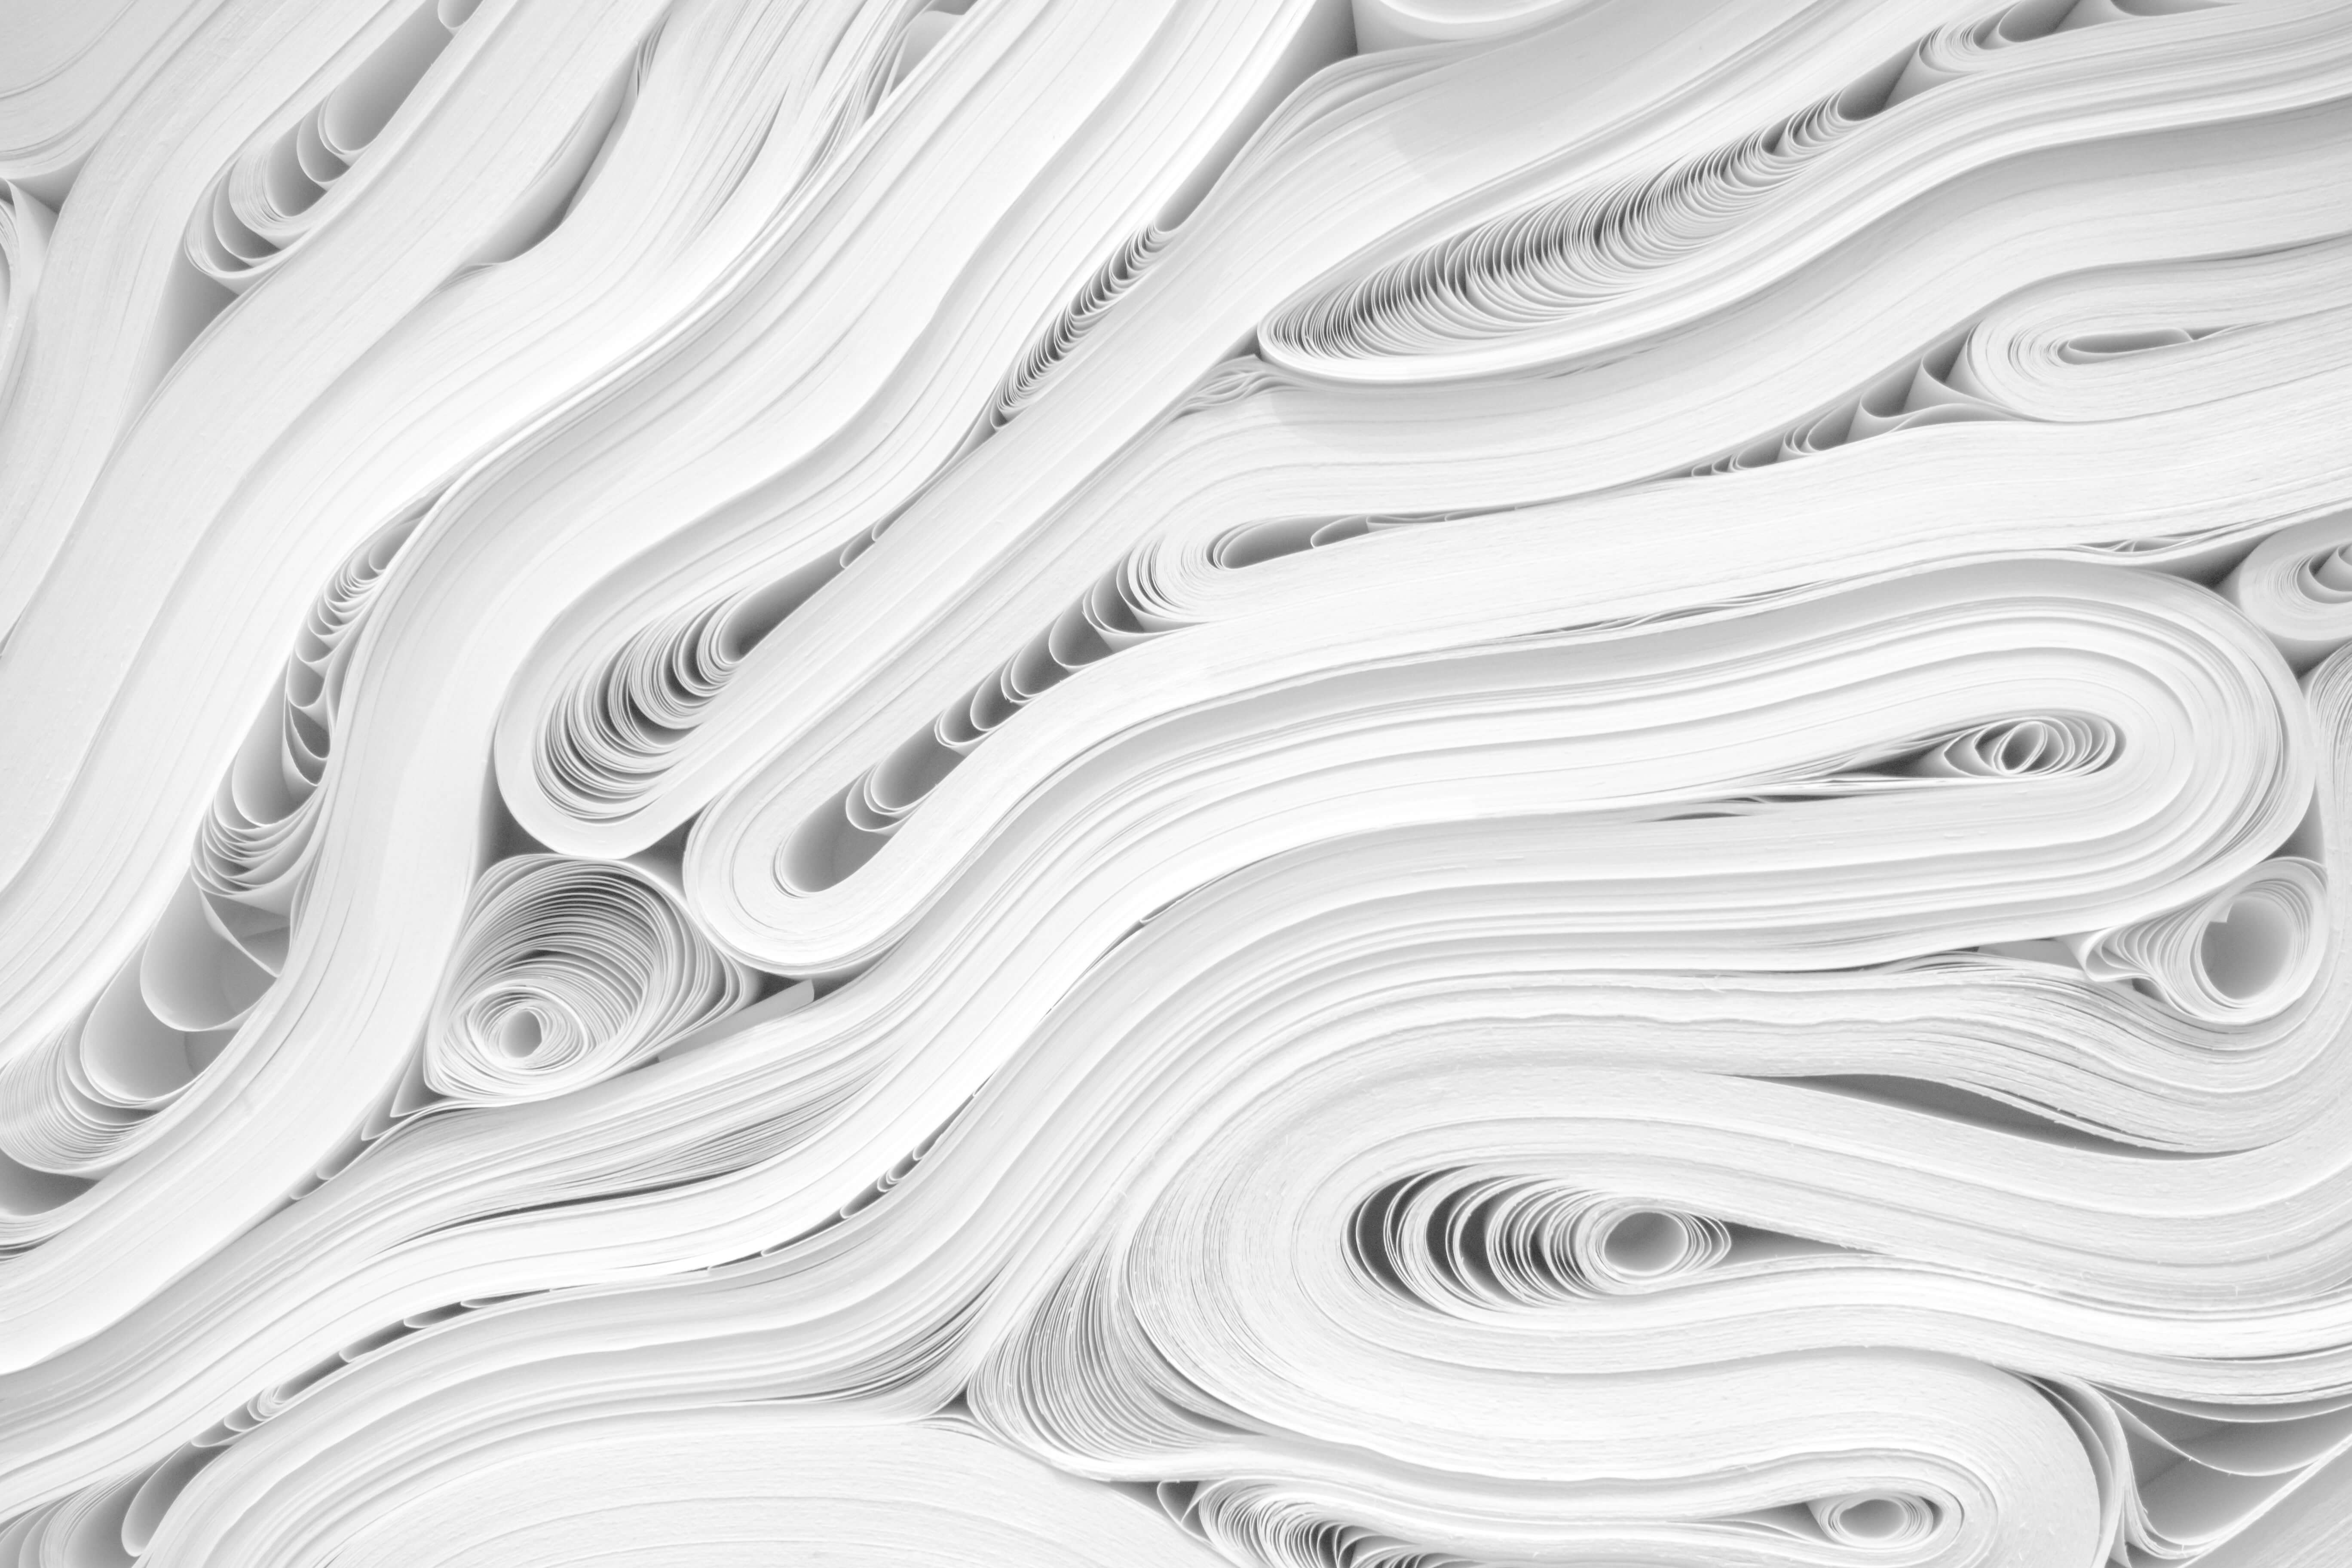 Industria del papel: falsas creencias